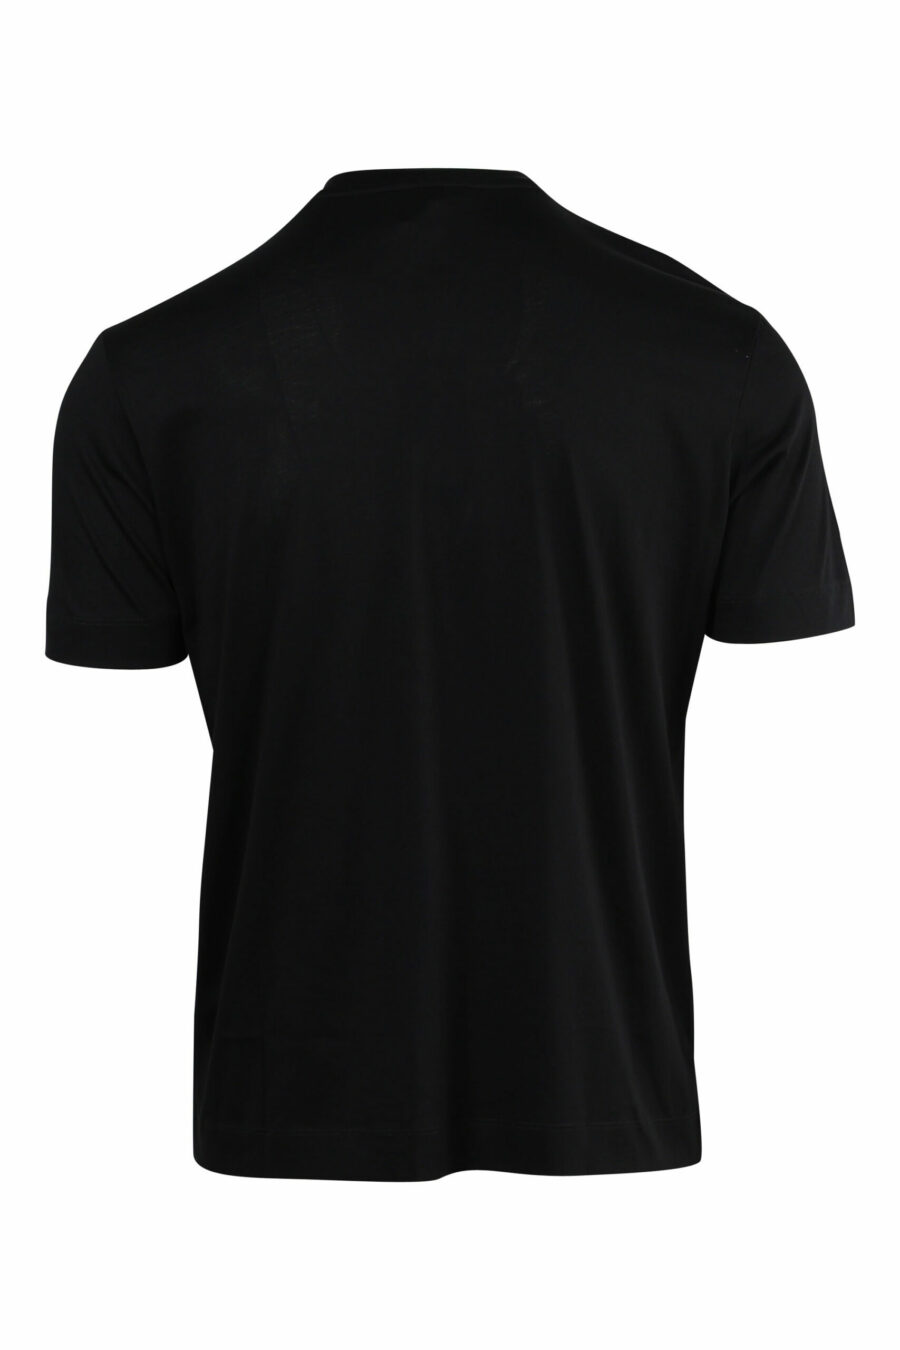 Schwarzes T-Shirt mit geprägtem Adler maxilogo - 8057970433729 1 skaliert